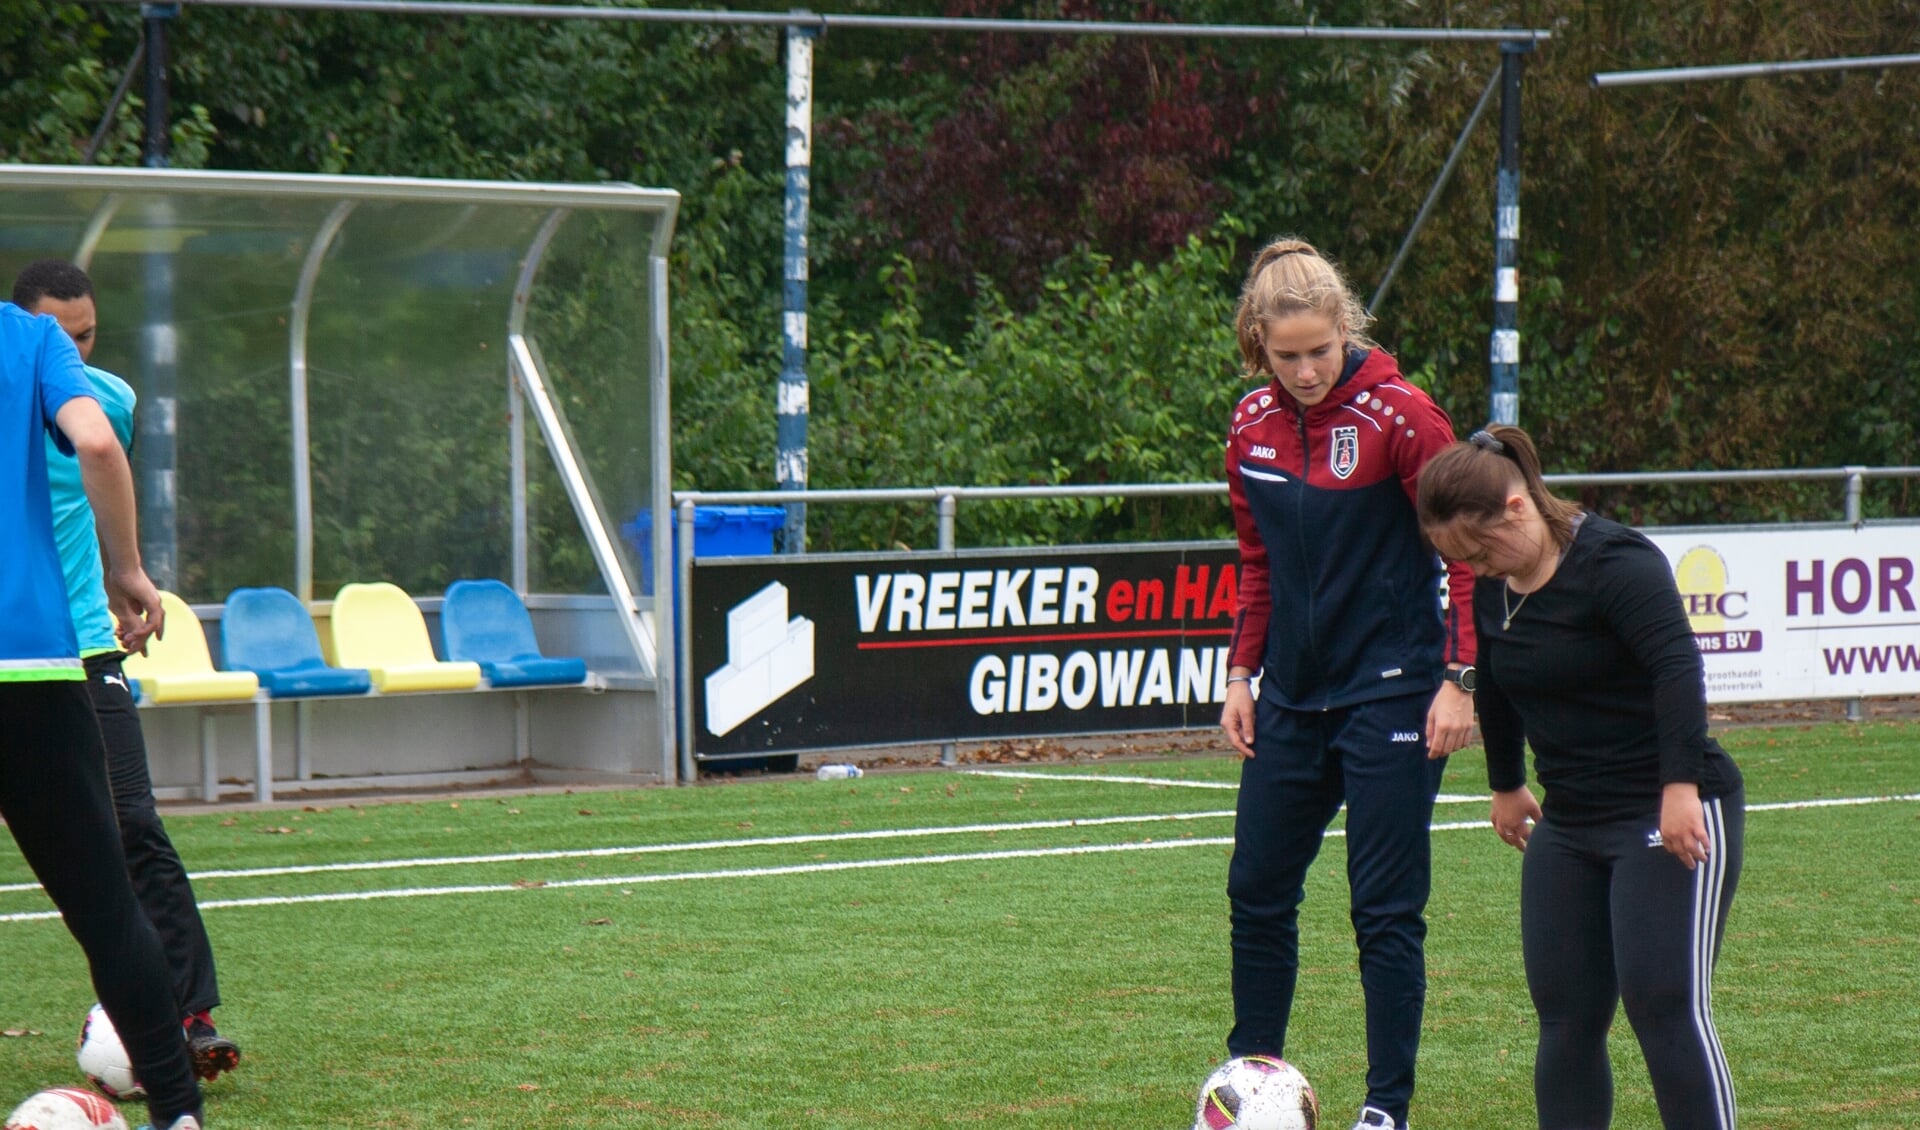 Deelneemster Kate in actie met een speelster van VV Alkmaar. 